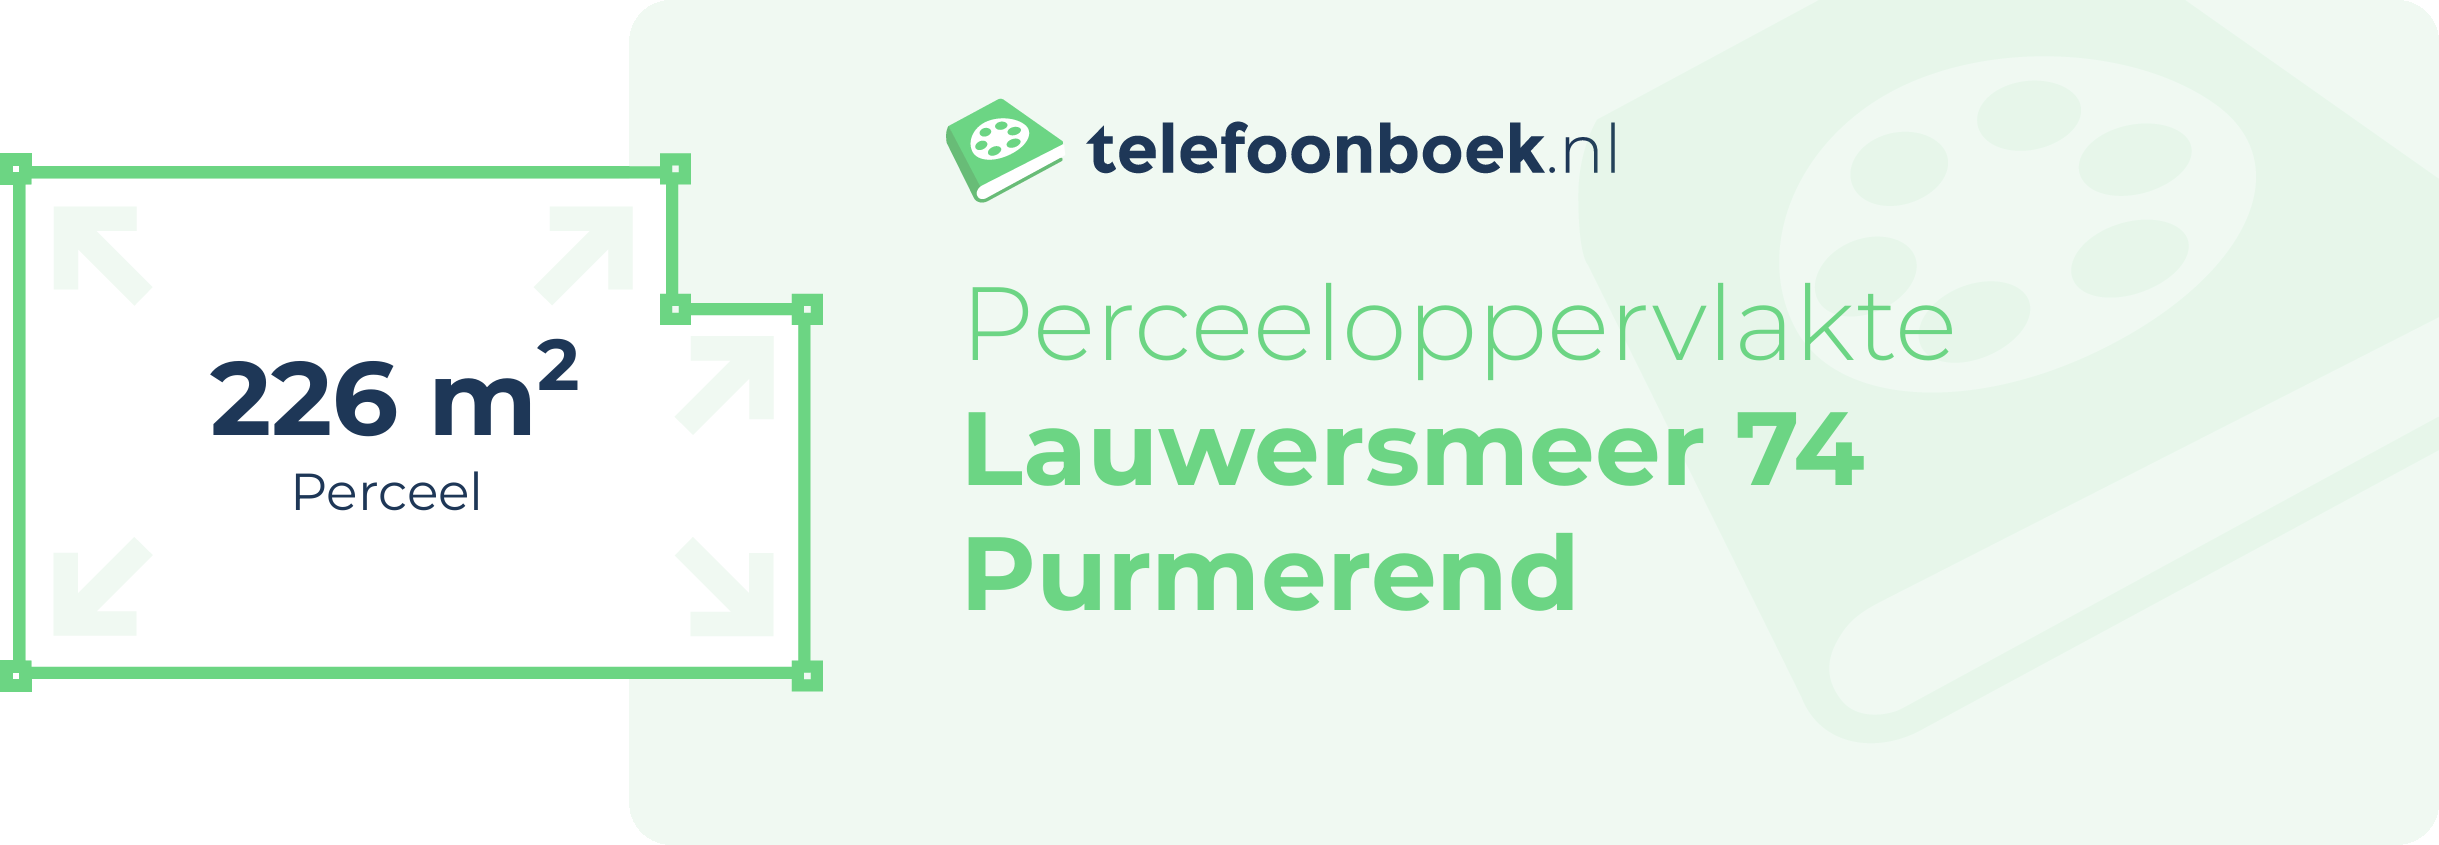 Perceeloppervlakte Lauwersmeer 74 Purmerend